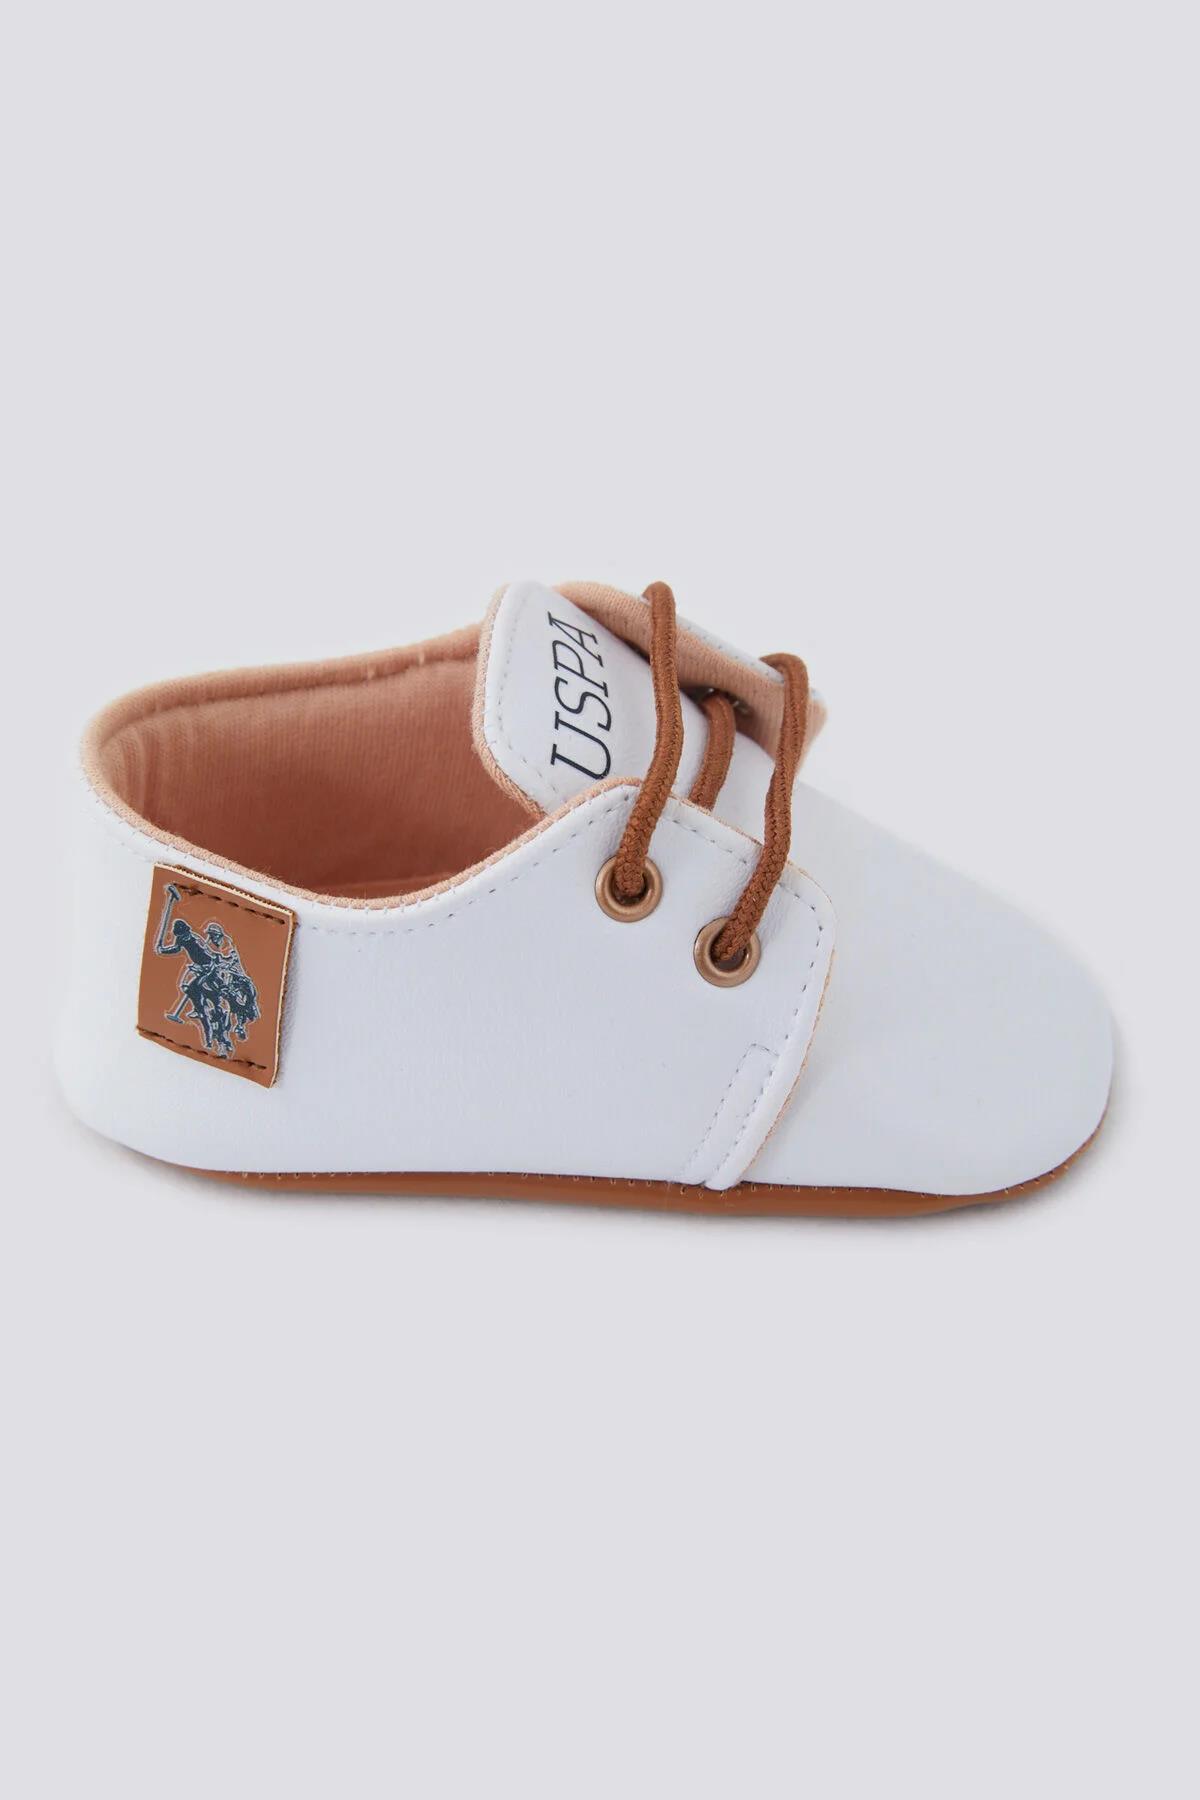 U.S Polo Erkek Bebek Ayakkabı 1302 Beyaz